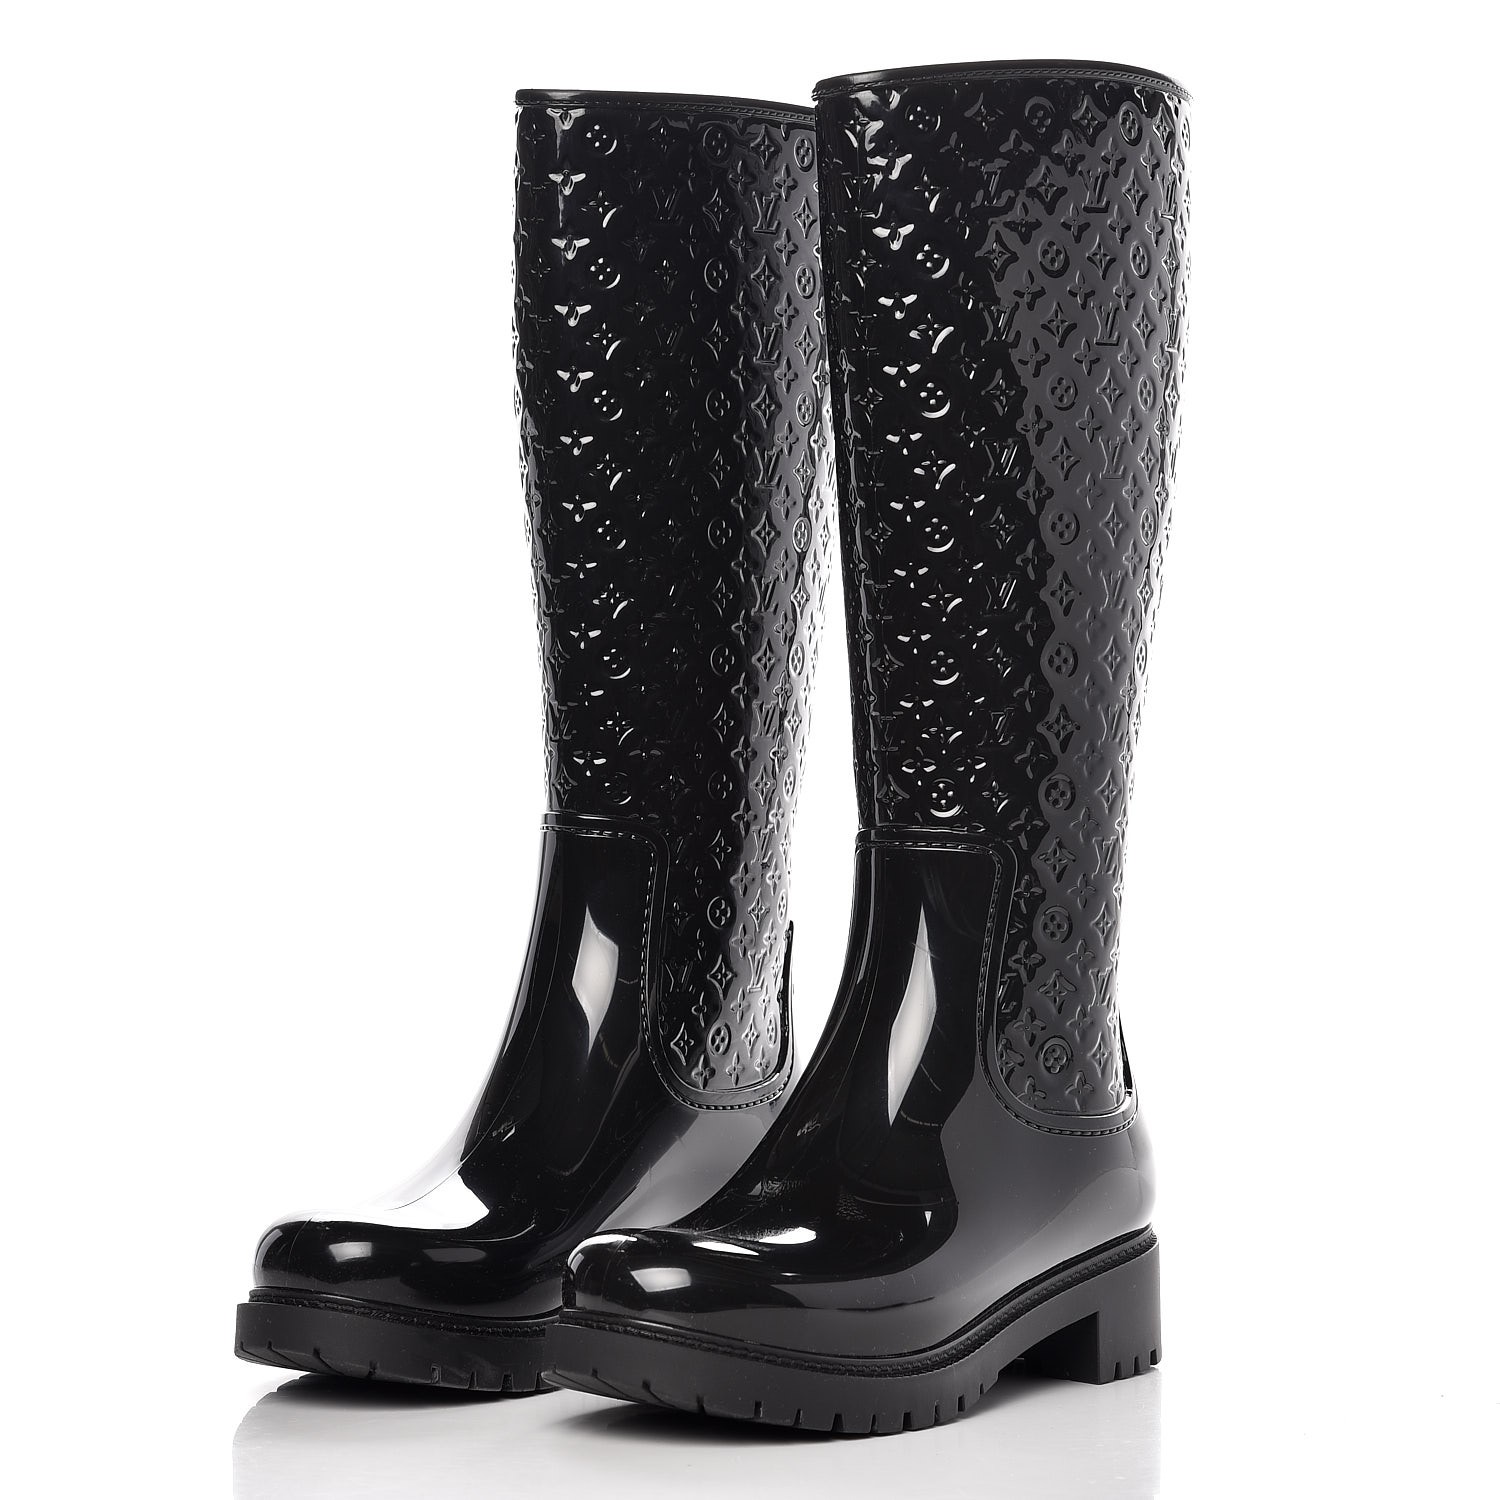 Wellington boots Louis Vuitton Black size 35 EU in Rubber - 36760132